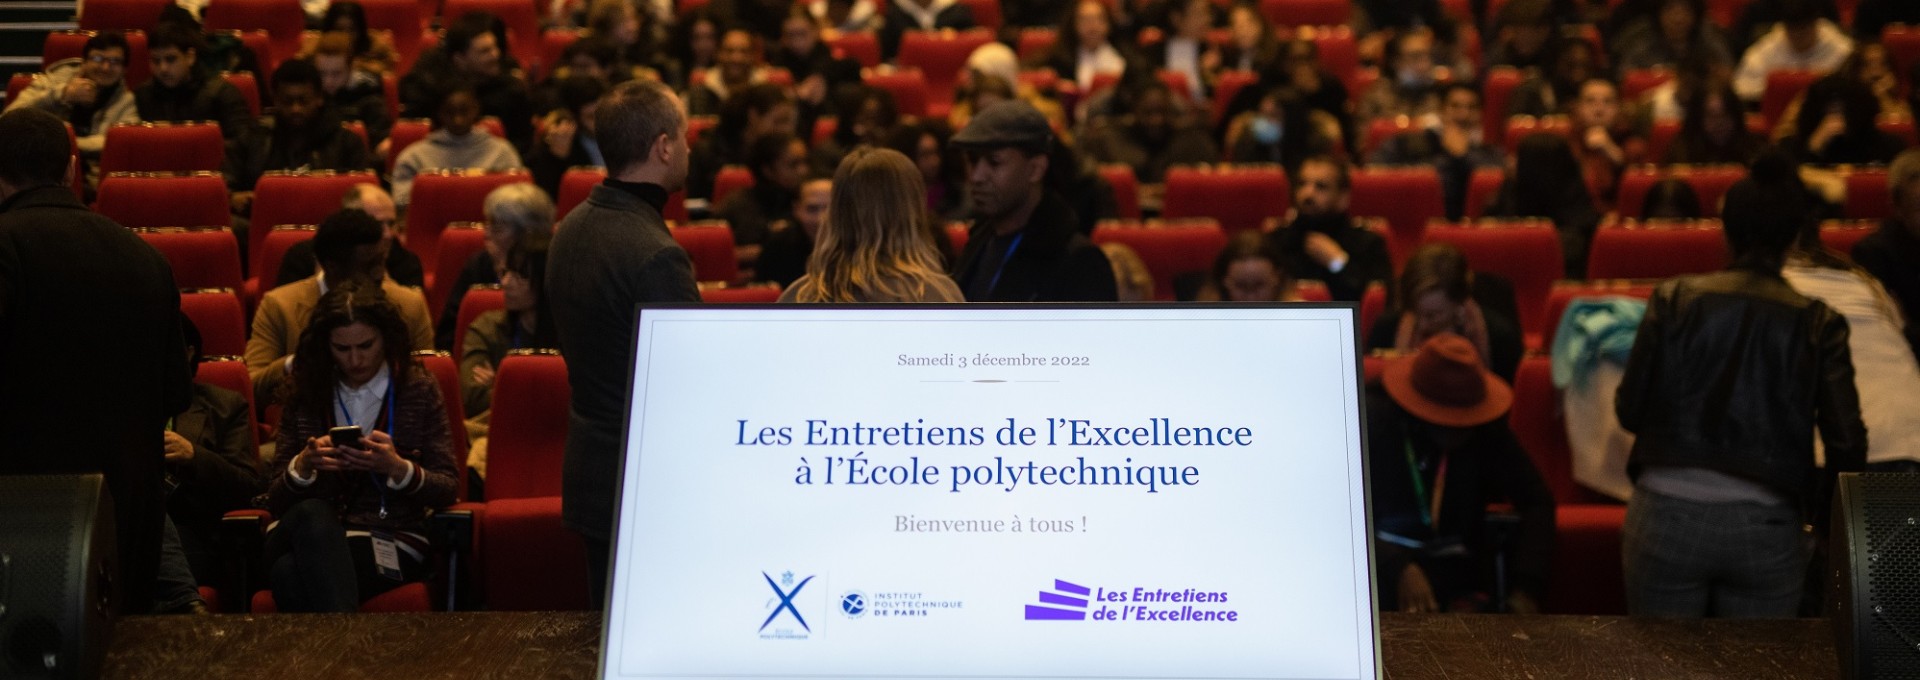 L’X accueille 700 élèves de l’enseignement secondaire en Ile de France pour préparer leur orientation 